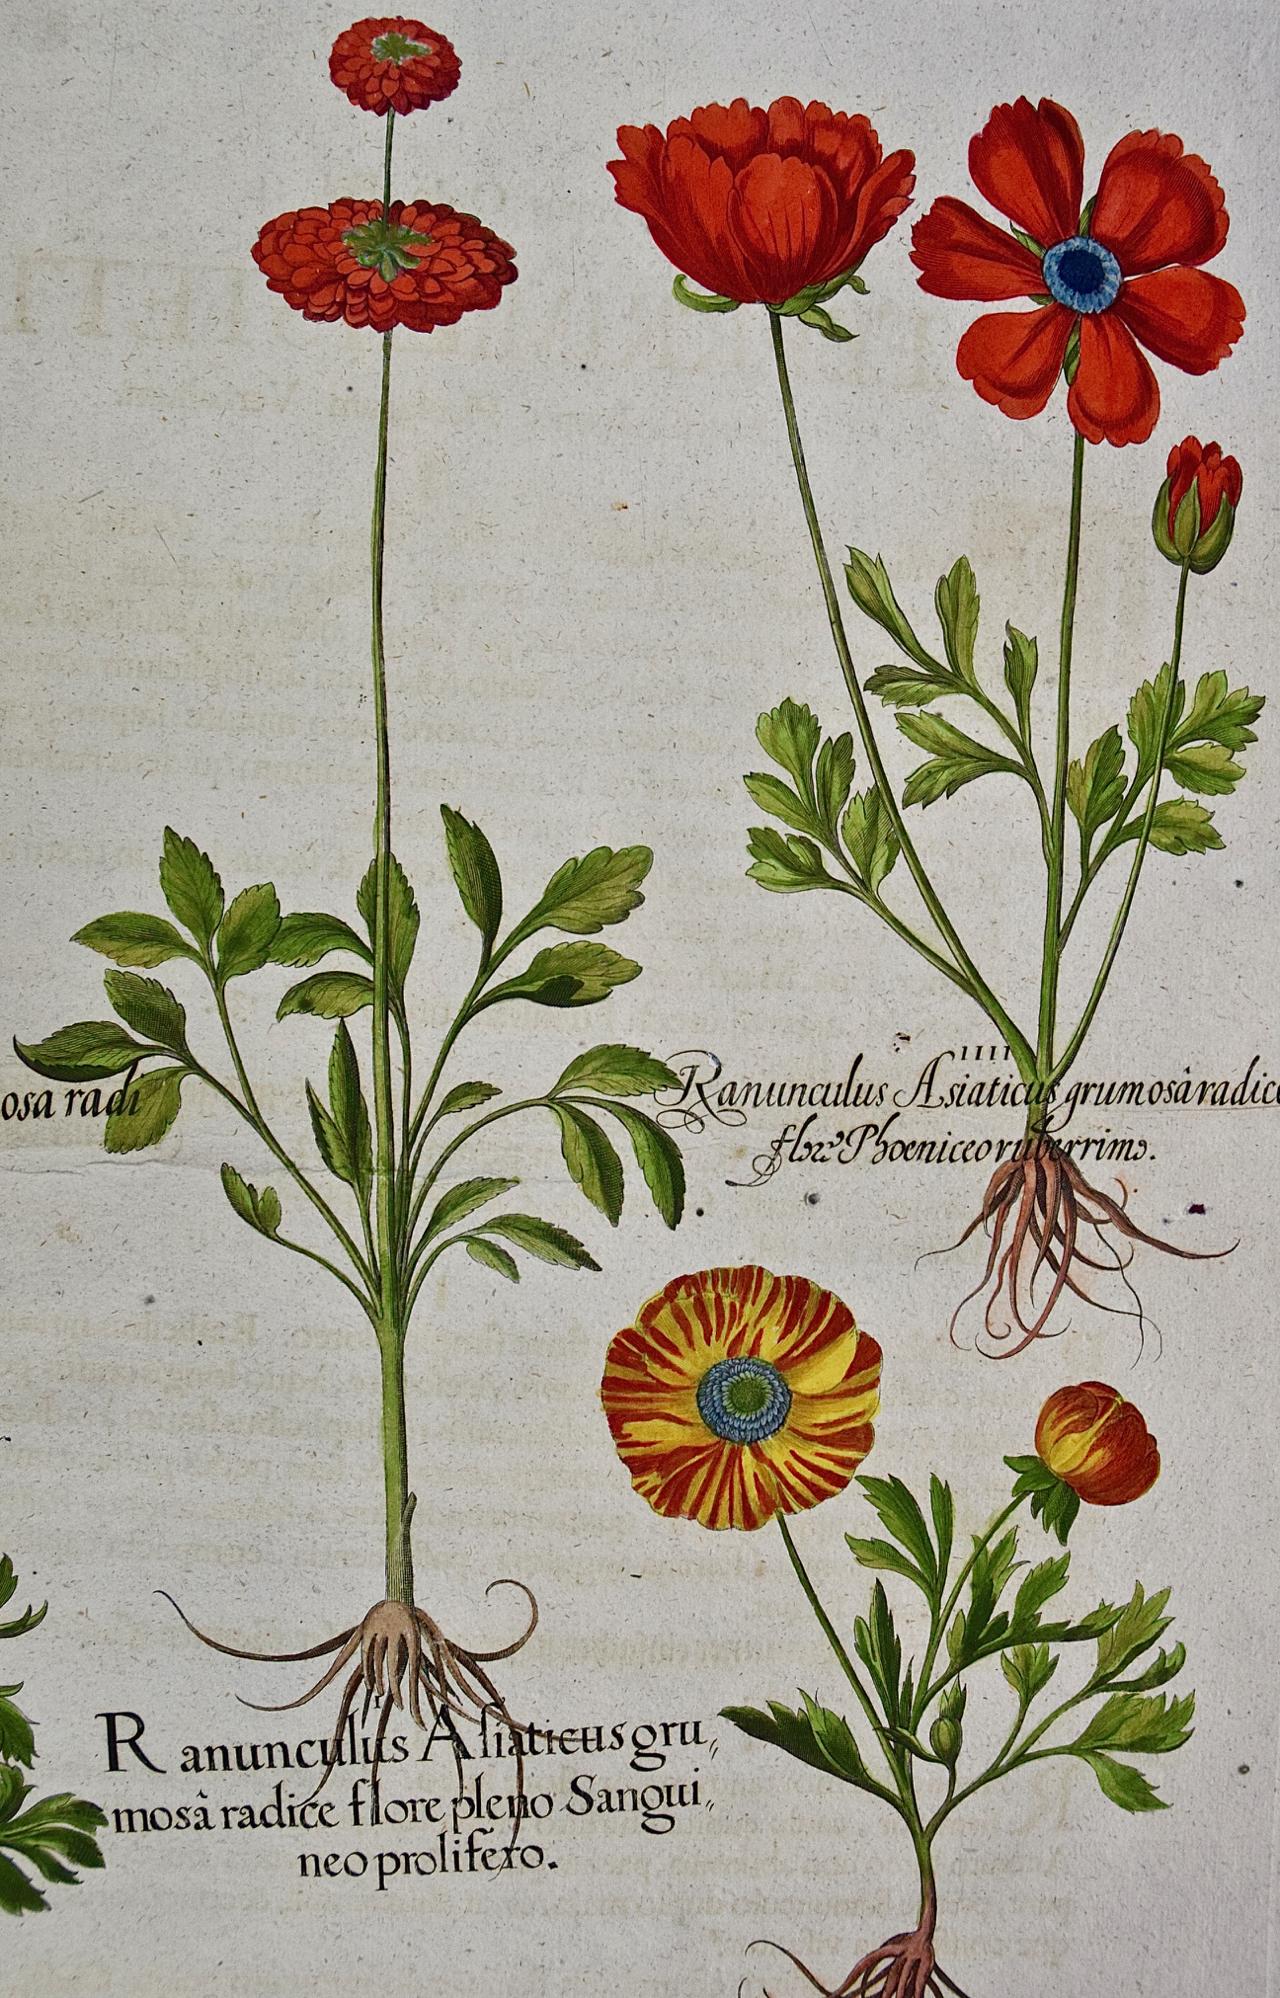 Une coupe de beurre fleurs : Gravure botanique colorée à la main par Besler du 18ème siècle - Académique Print par Basilius Besler